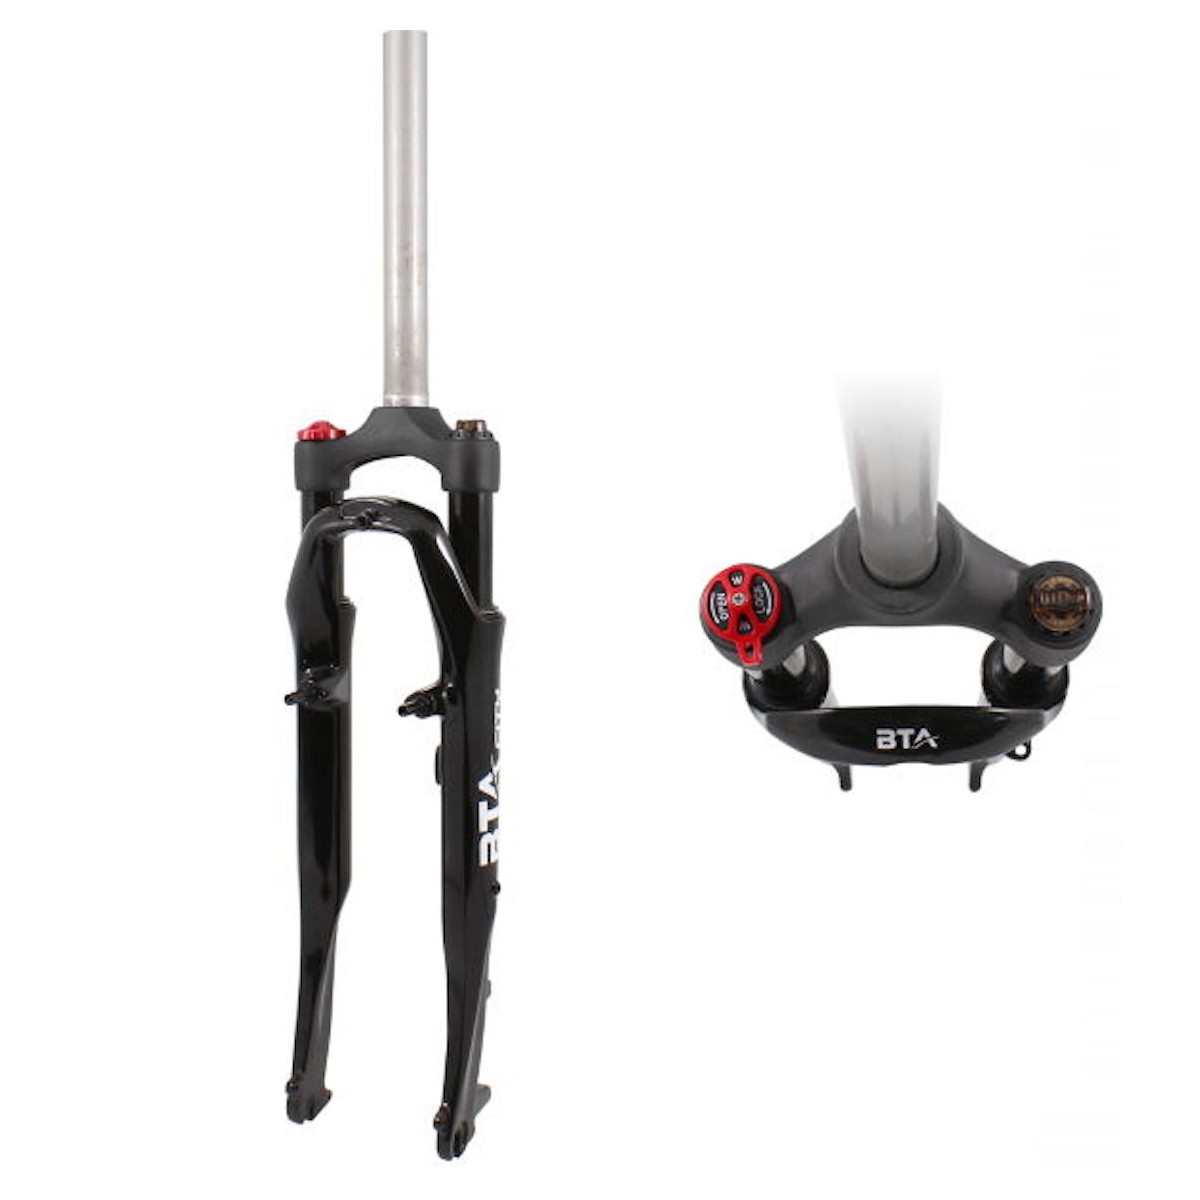 WAG 28 1-1/8 HEADSET suspension fork - black